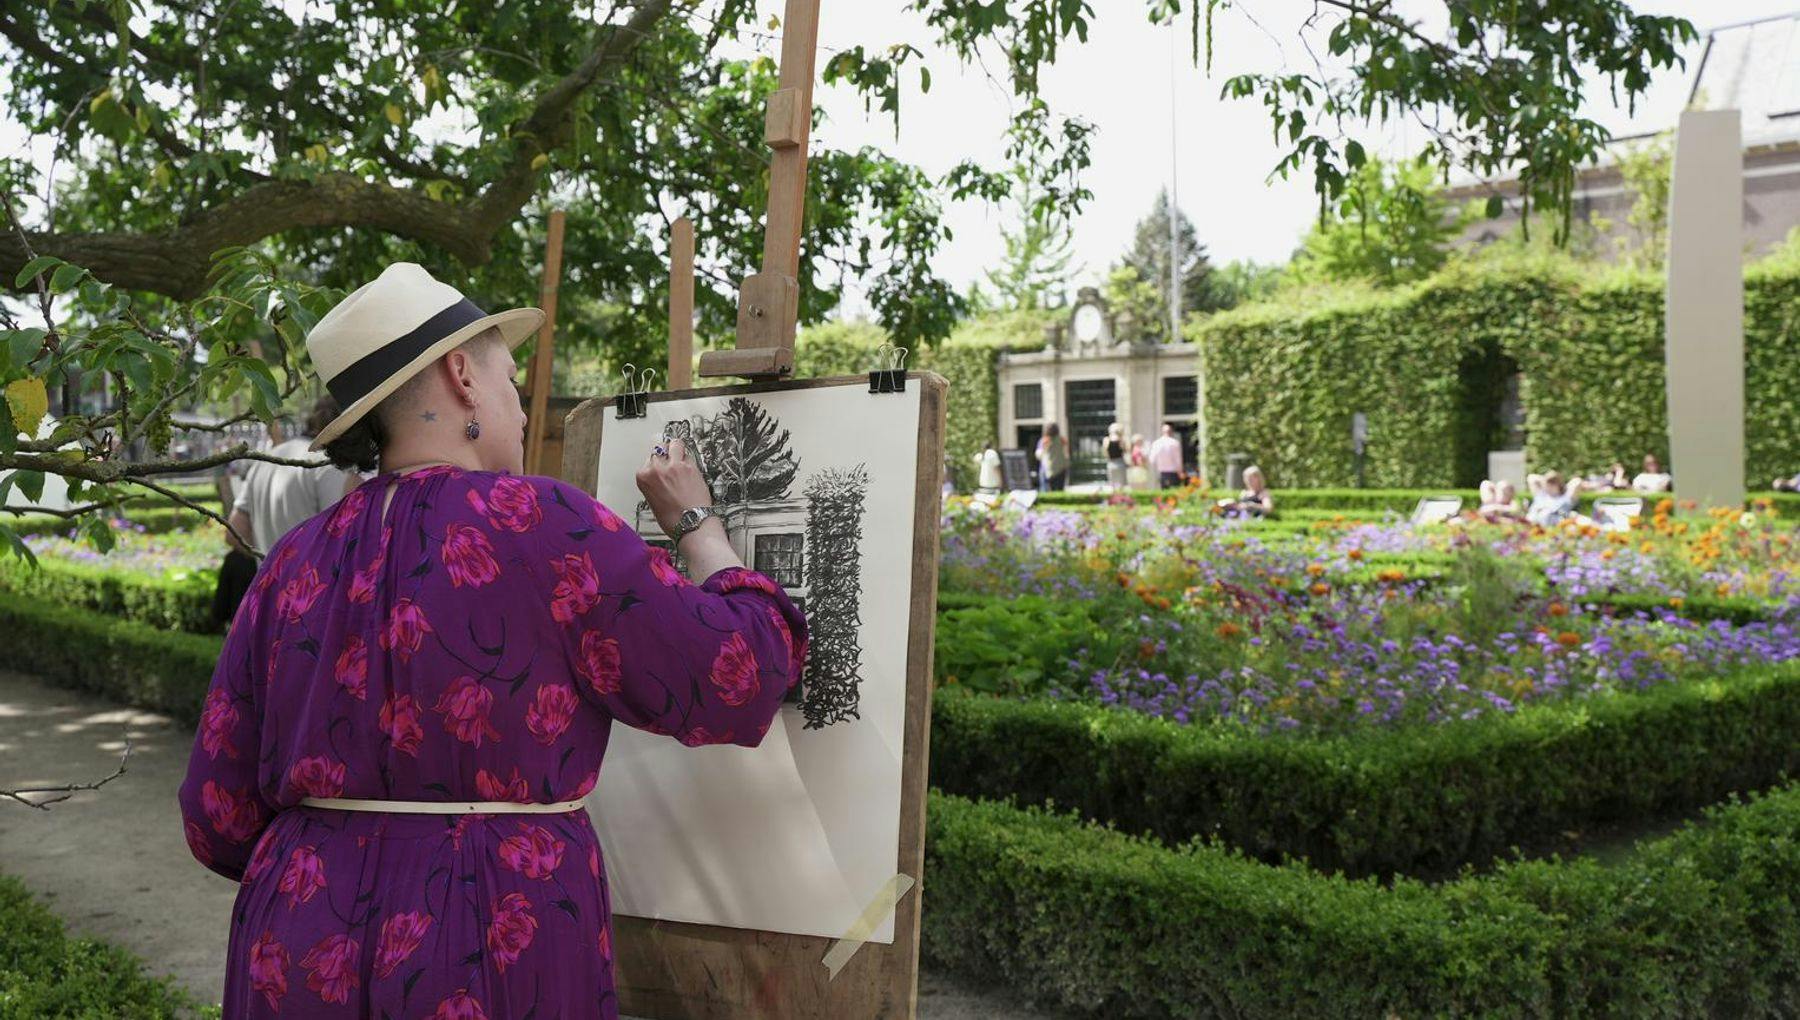 Person painting @ garden Rijksmuseum.